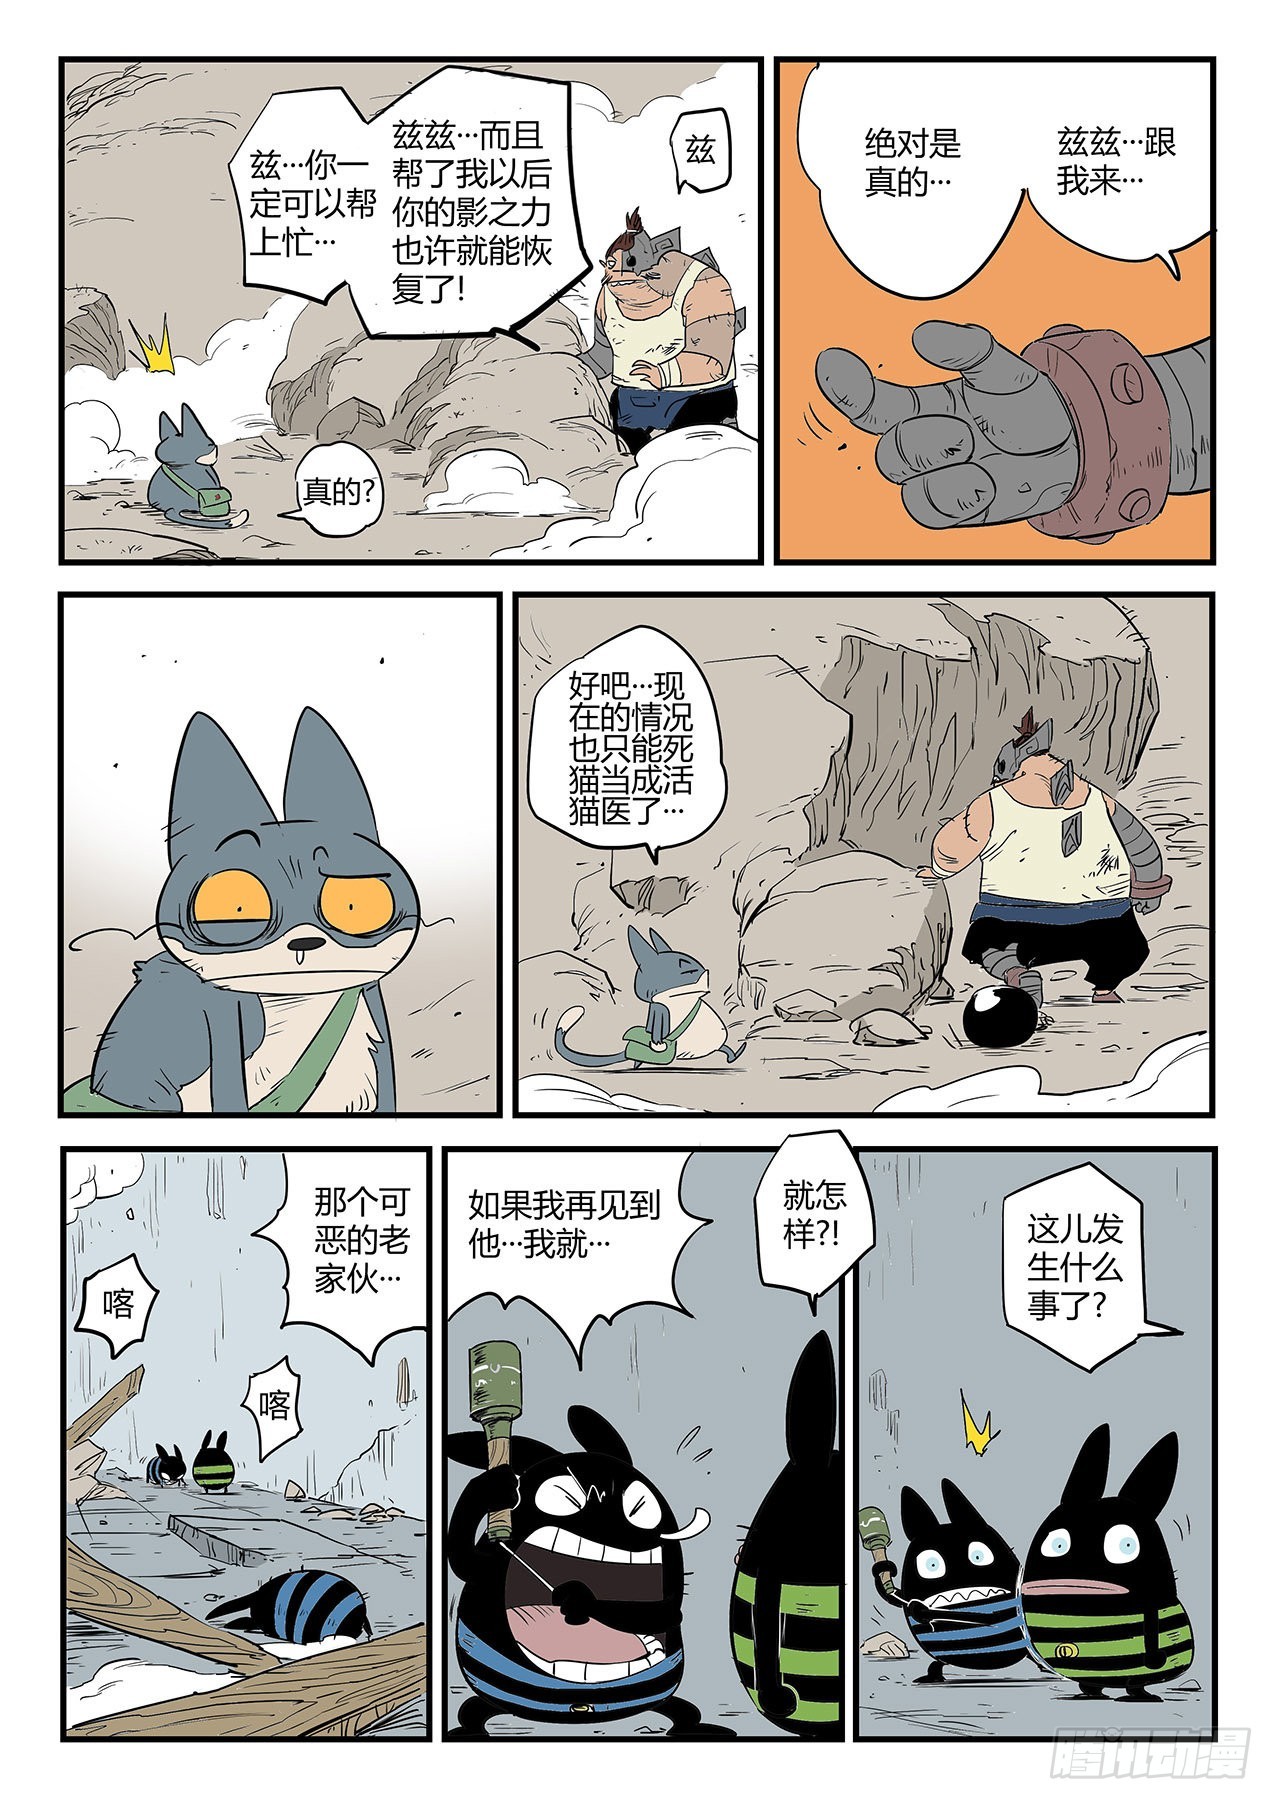 影子貓彩色版 - 超階的戰鬥 - 3